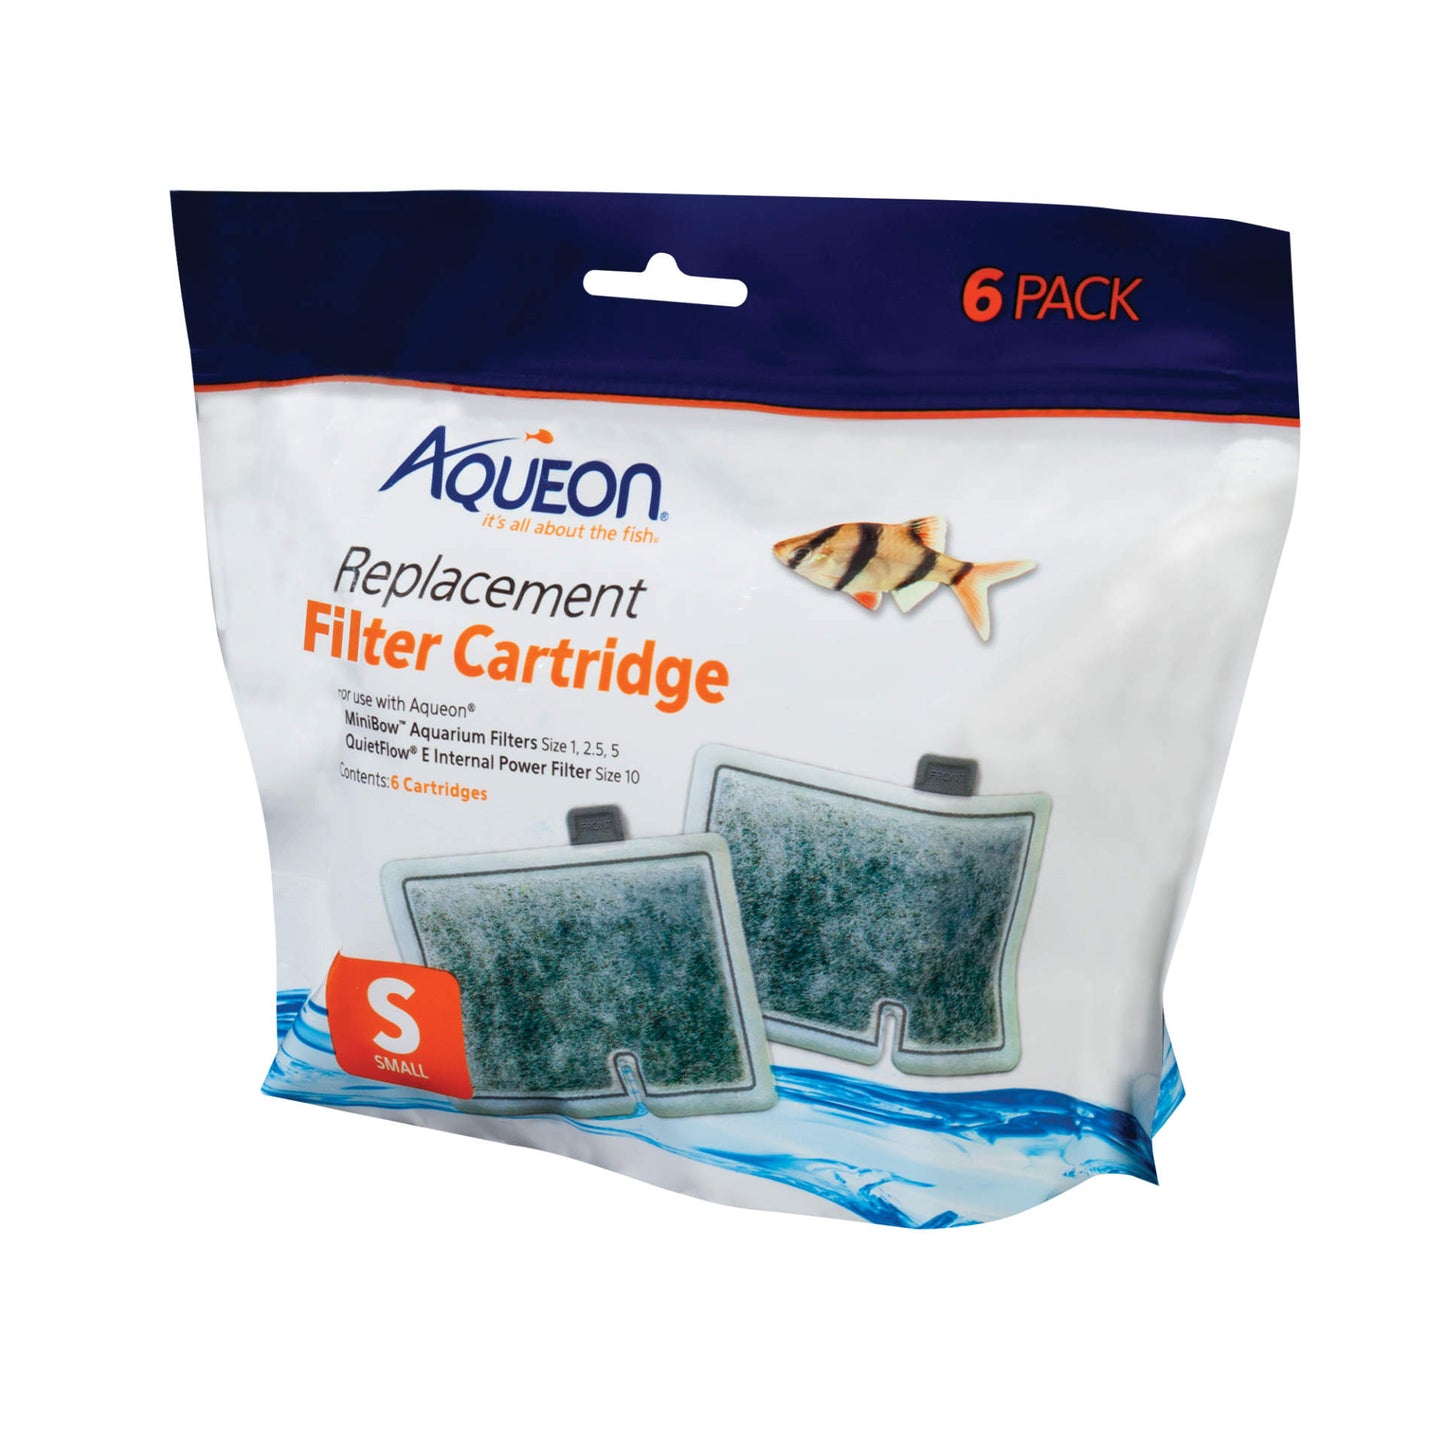 Aqueon Replacement Filter Cartridges 6 pk